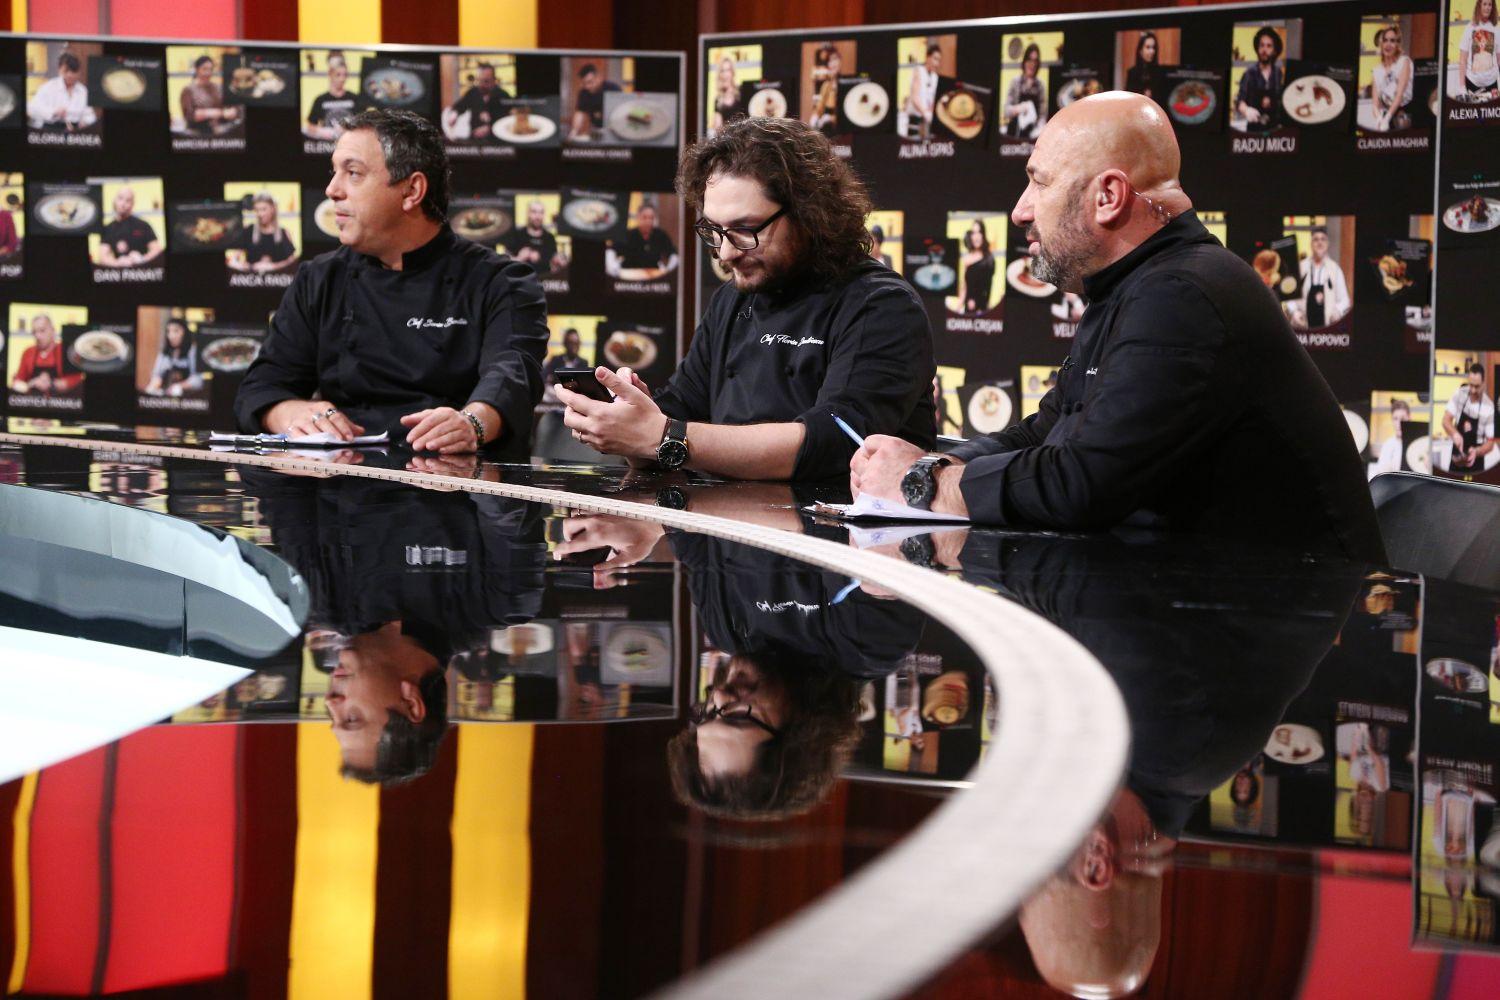 Chefii își aleg bucătarii și află culorile tunicilor în care vor lupta, astăzi, de la 20:30 la Antena 1